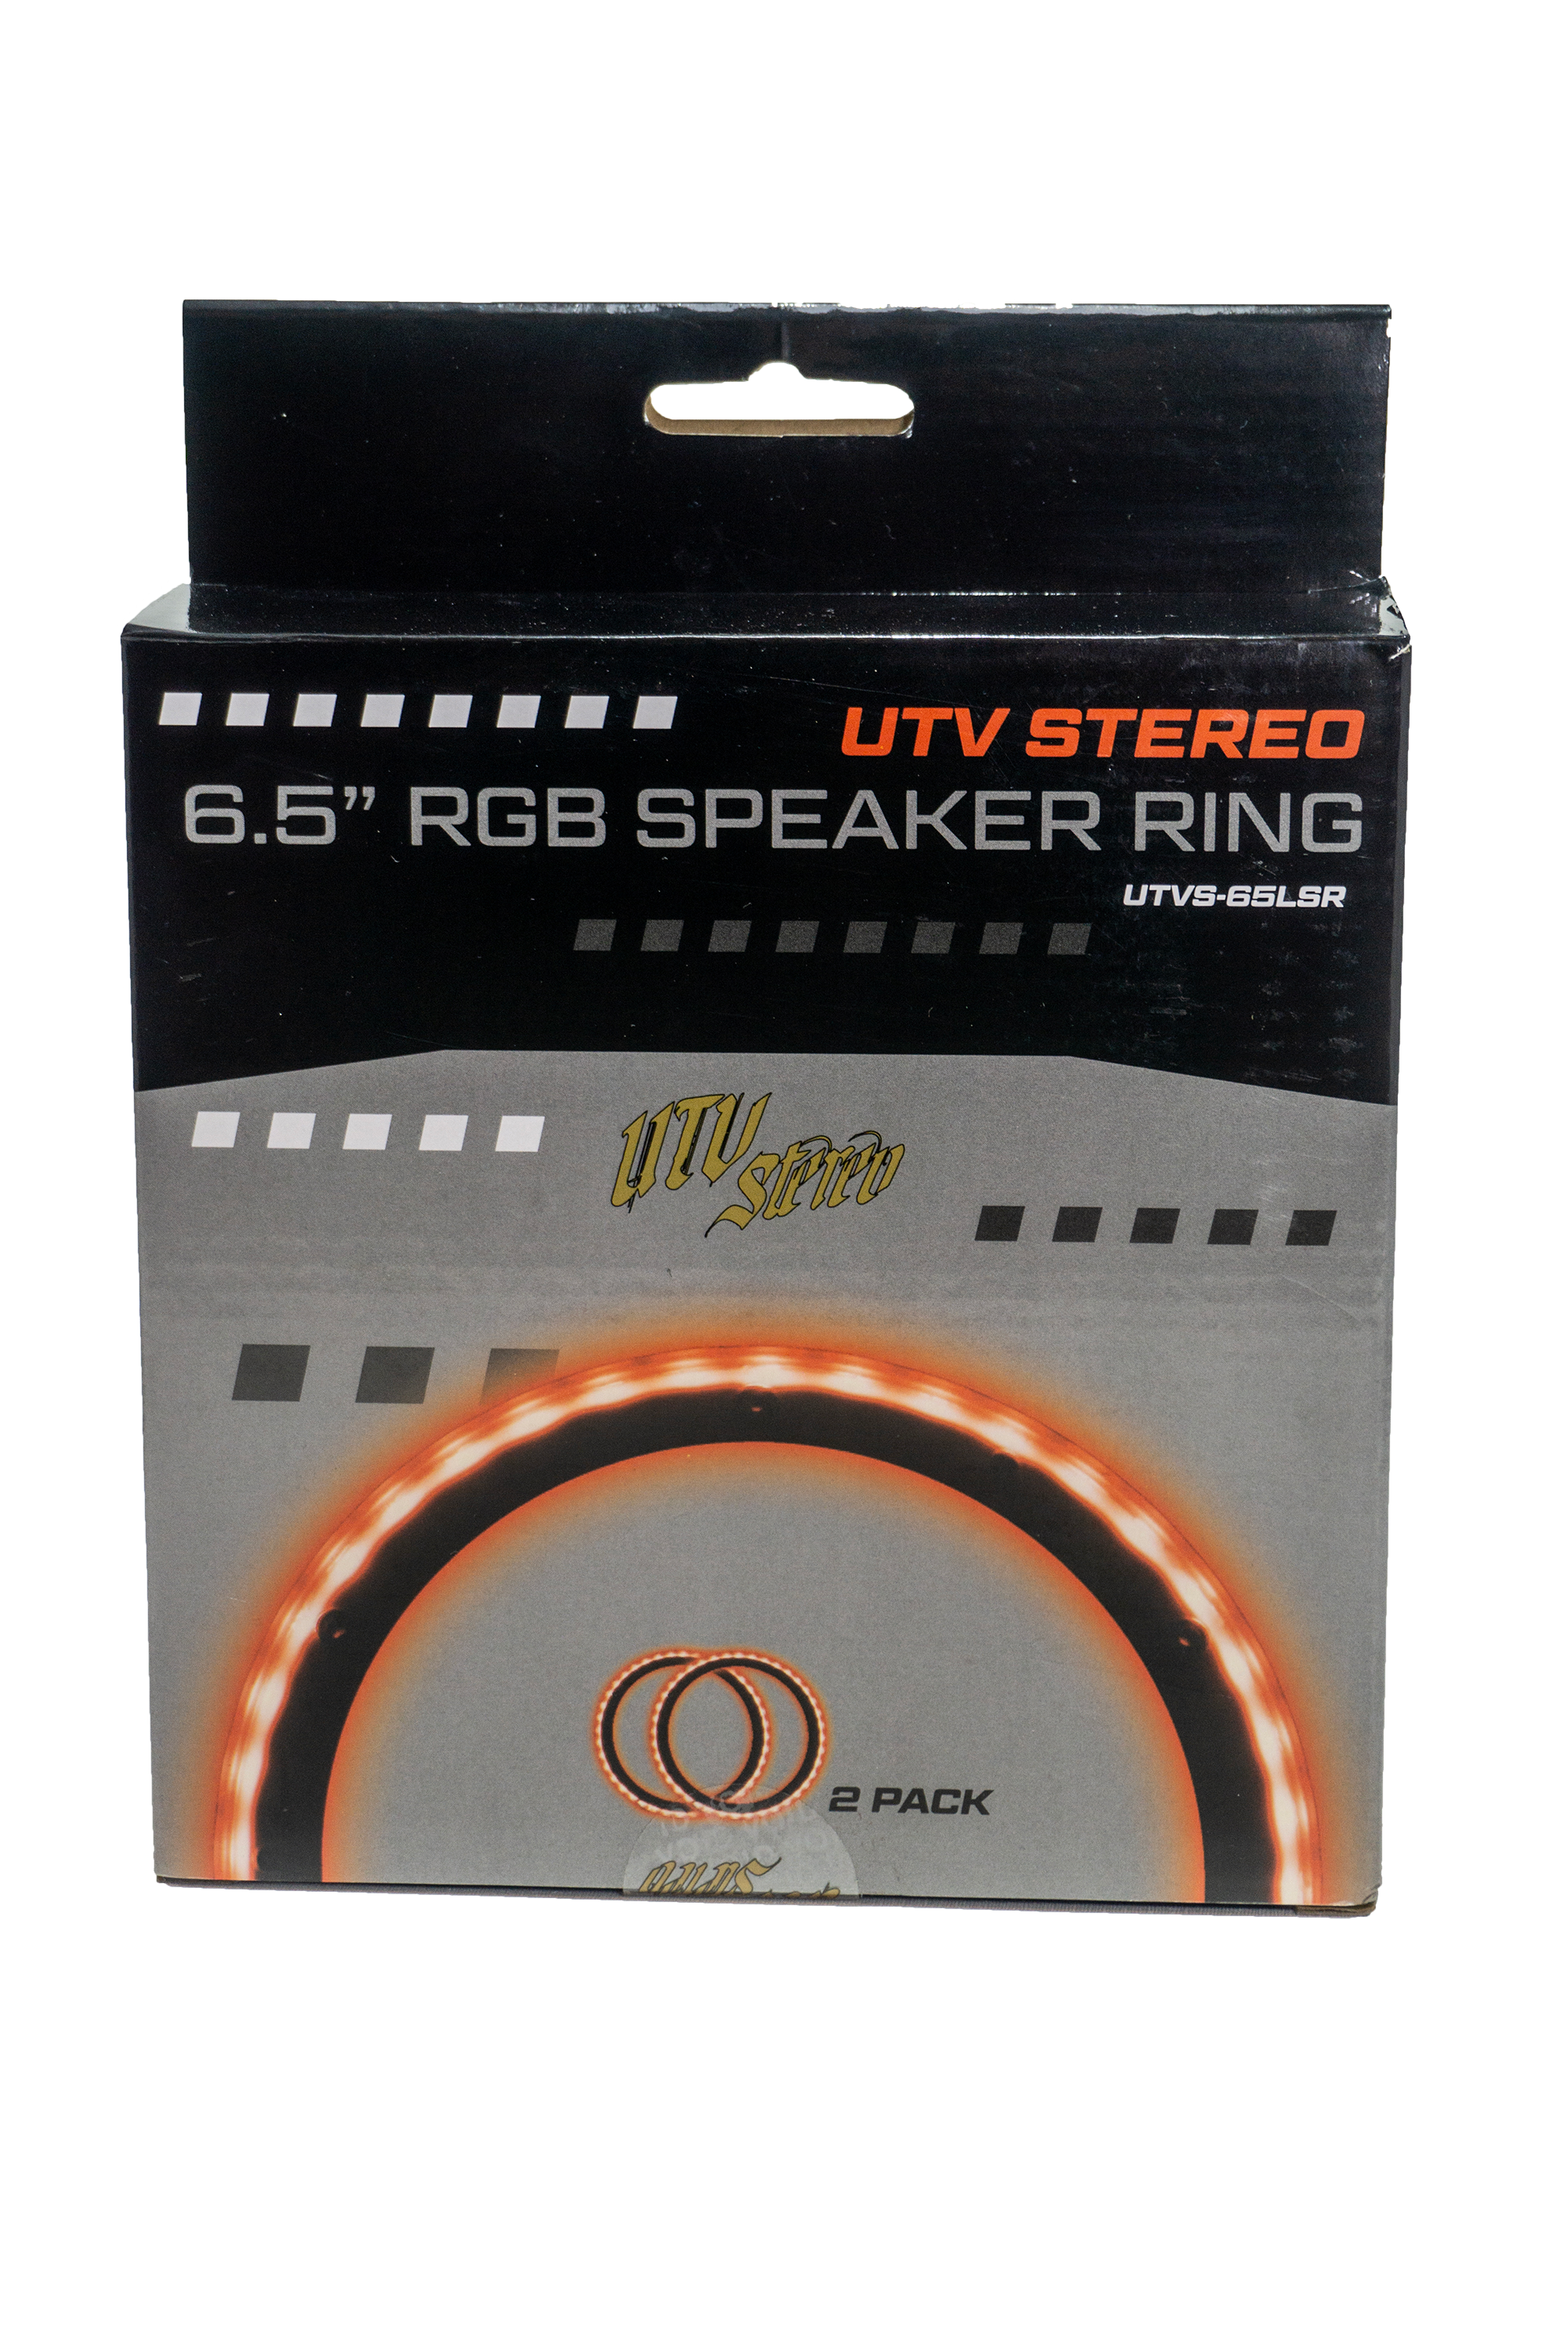 6.5" RGB LED Speaker Rings (Pair) | UTVS-65LSR